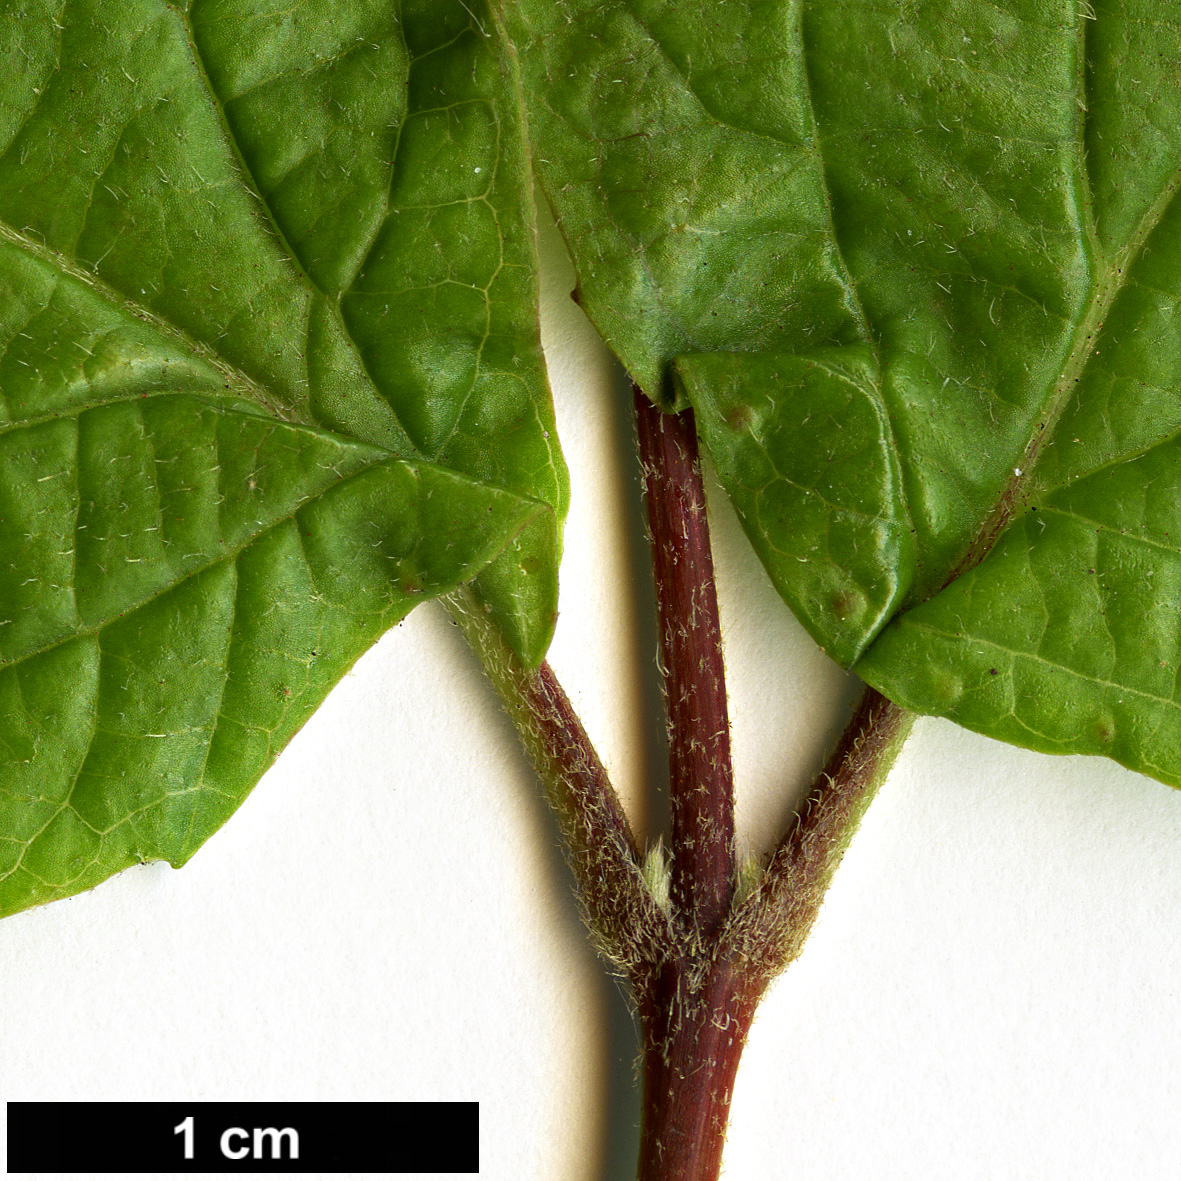 High resolution image: Family: Adoxaceae - Genus: Viburnum - Taxon: melanocarpum